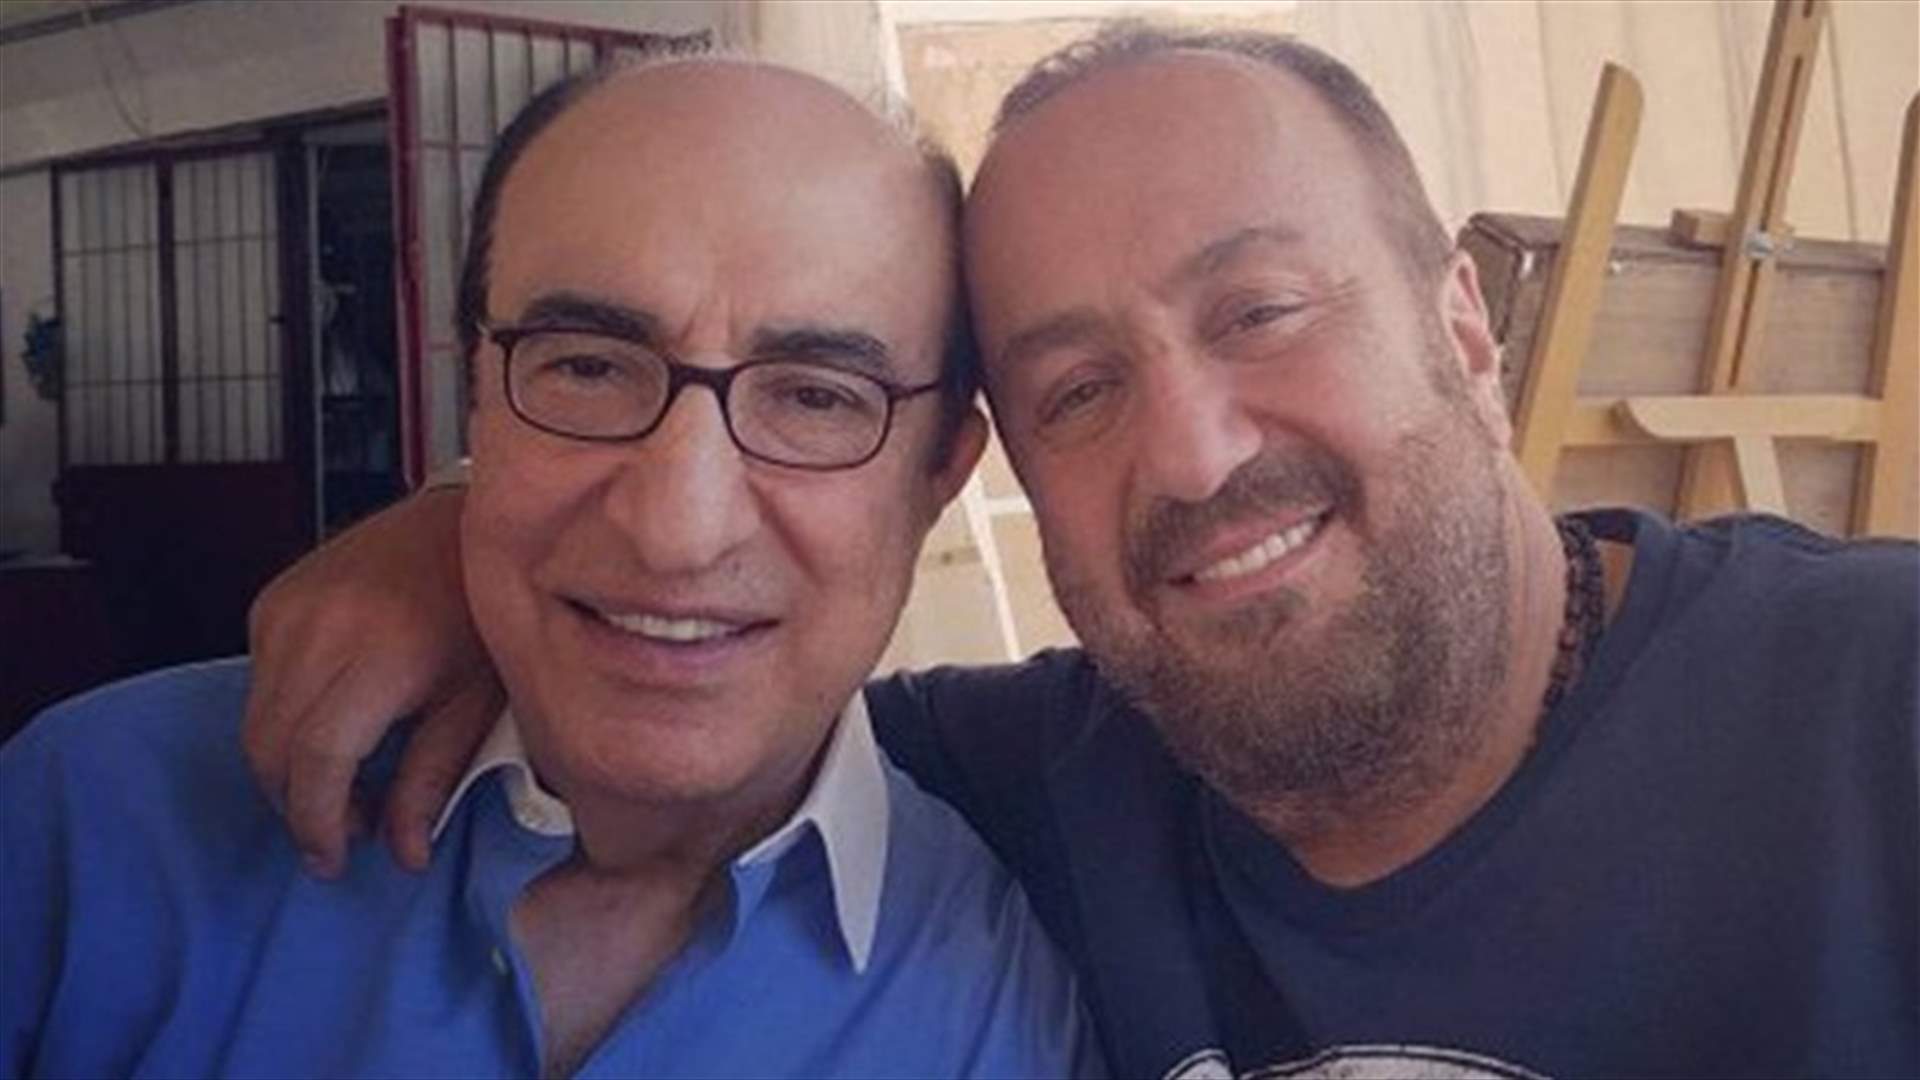 غسان الرحباني يستذكر لحظاته الأخيرة مع والده الياس الرحباني قبل نقله الى المستشفى: &quot;بتخاف من بيّك اللي بتحبو&quot;